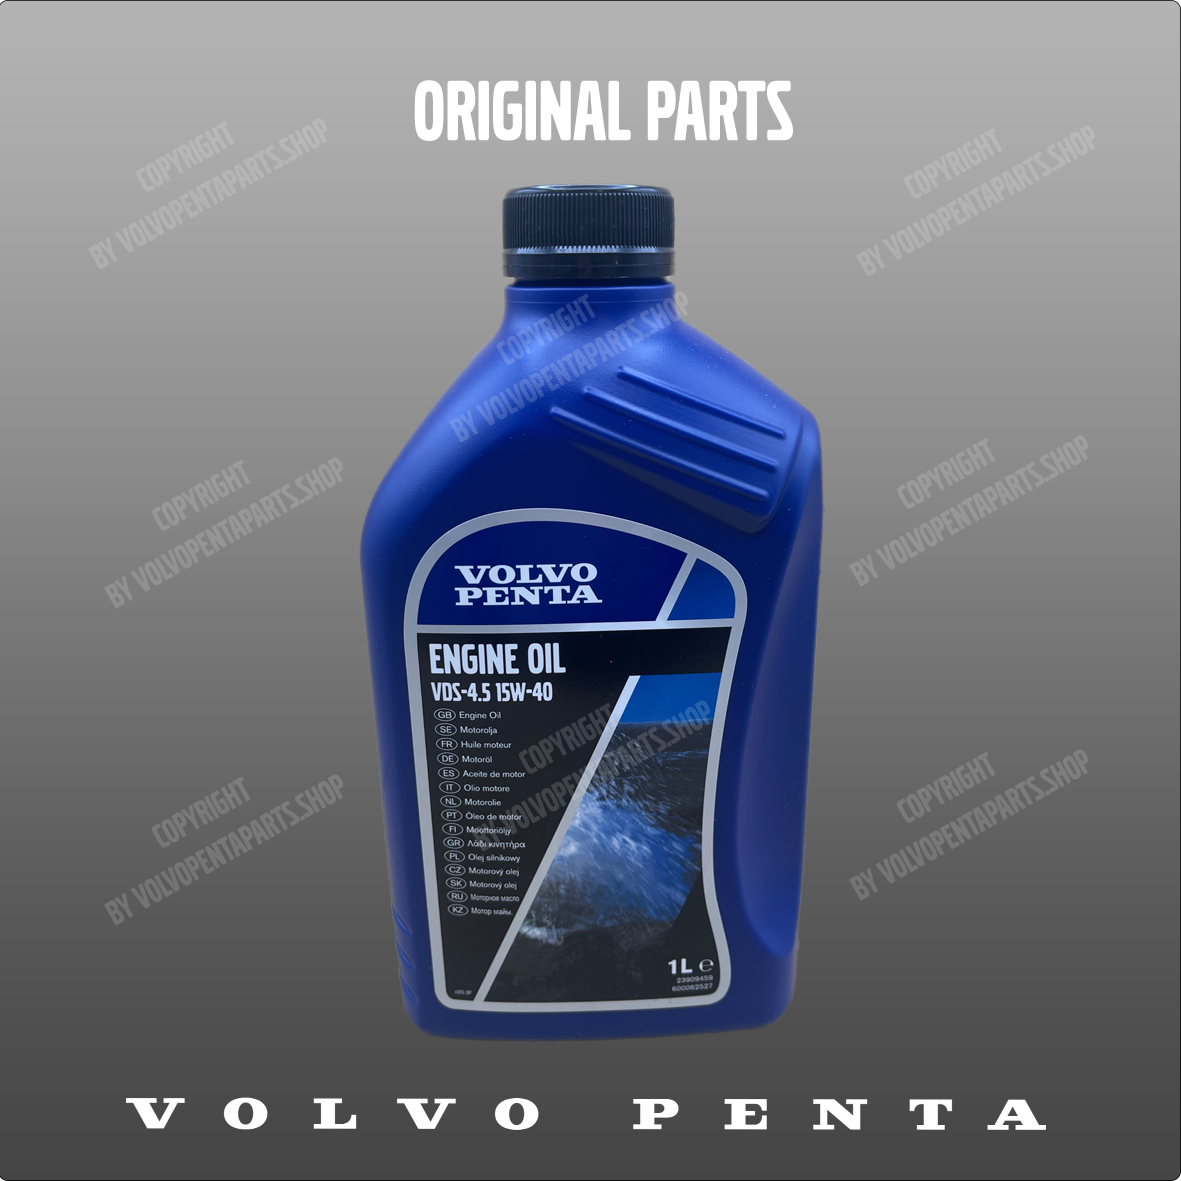 Volvo Penta oil 23909459